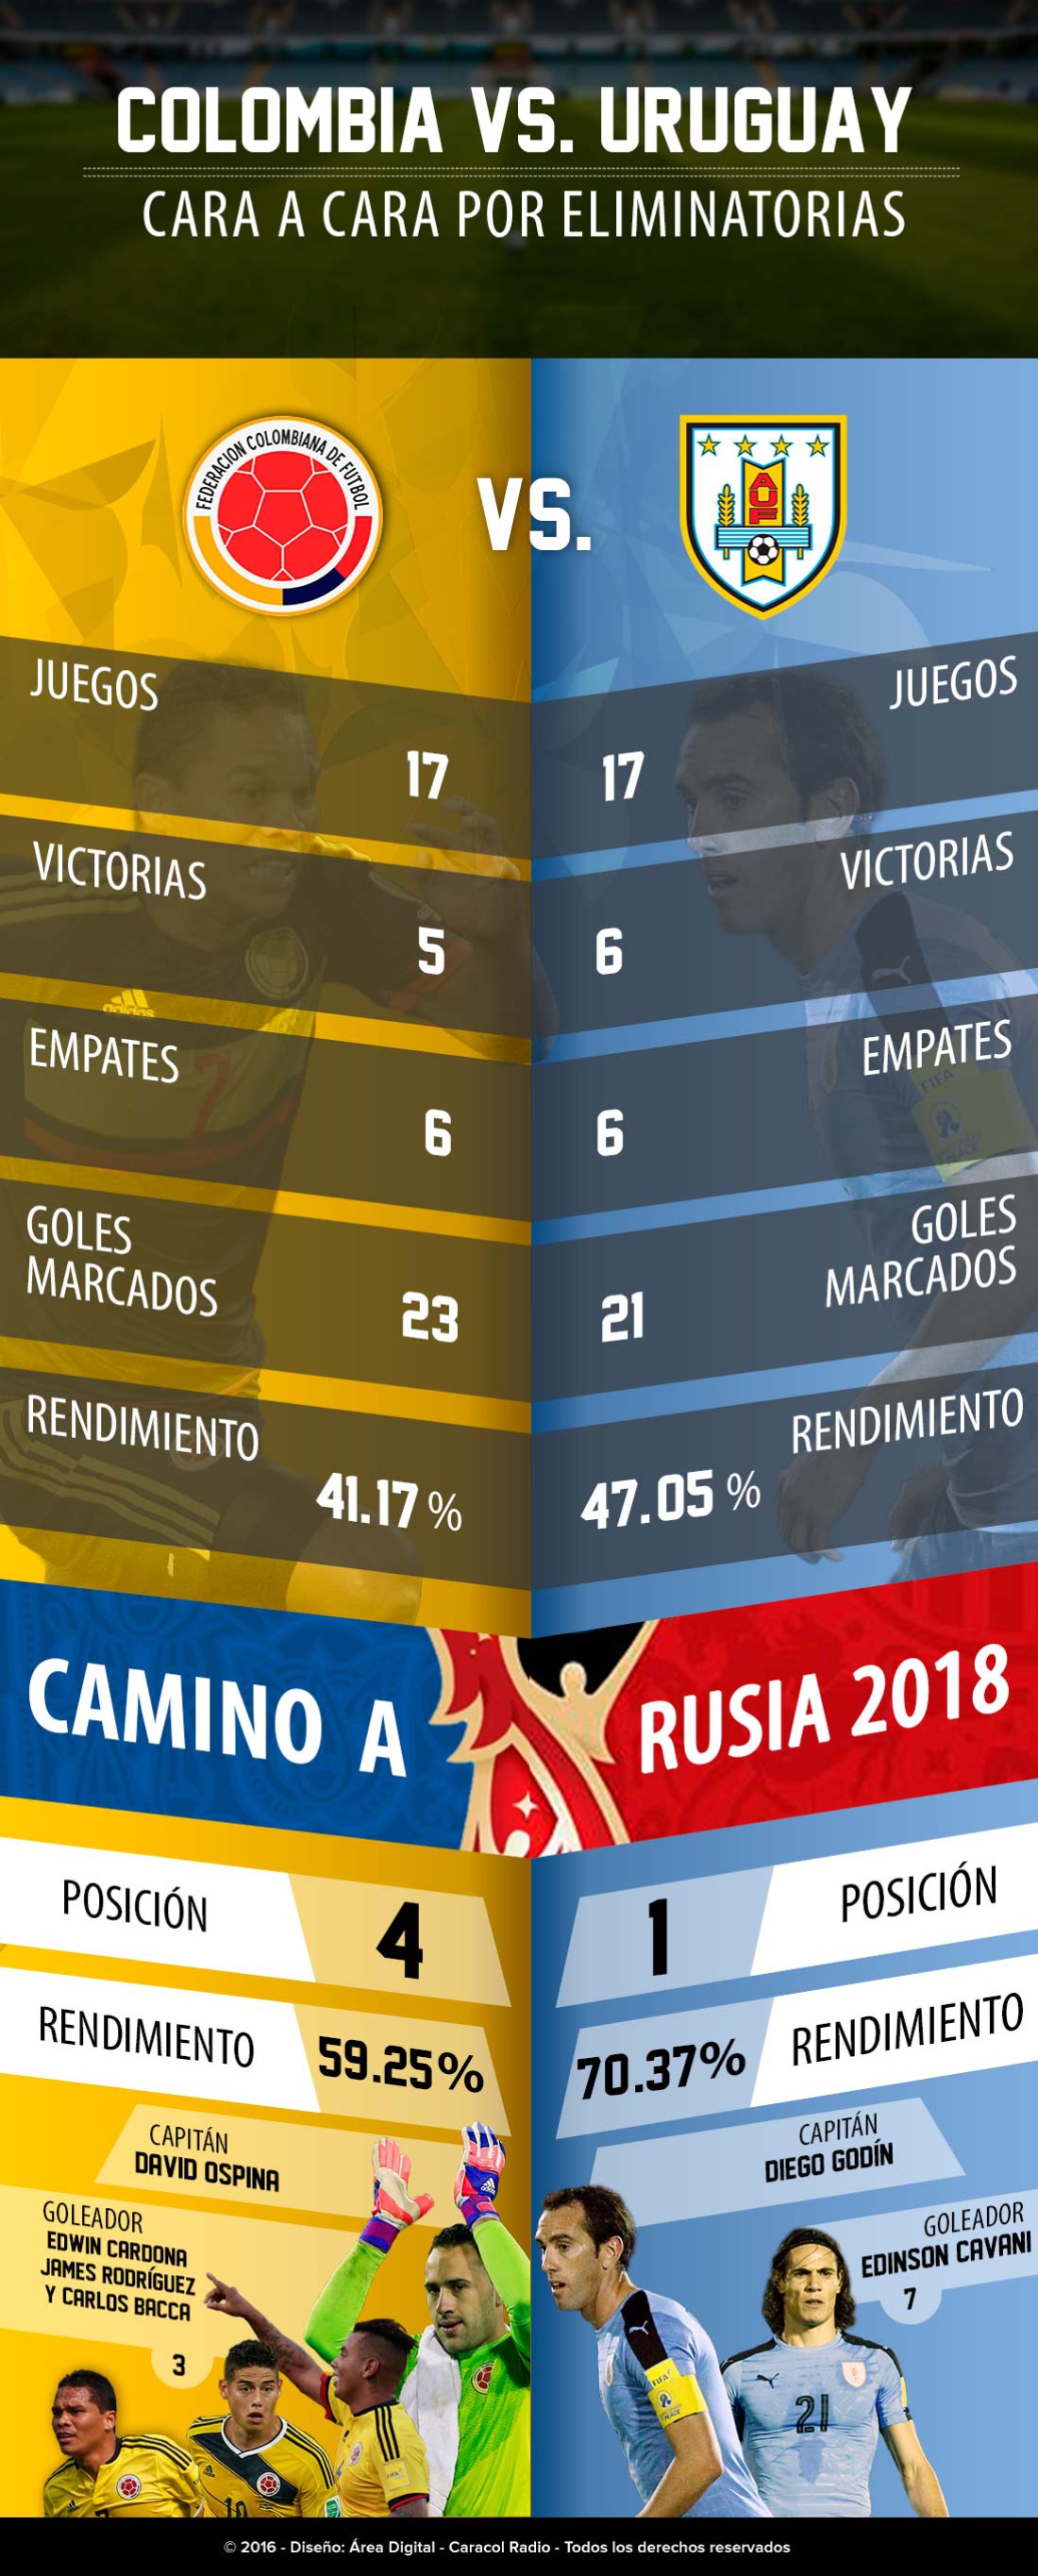 ¿Quién ha ganado más partidos entre Colombia y Uruguay